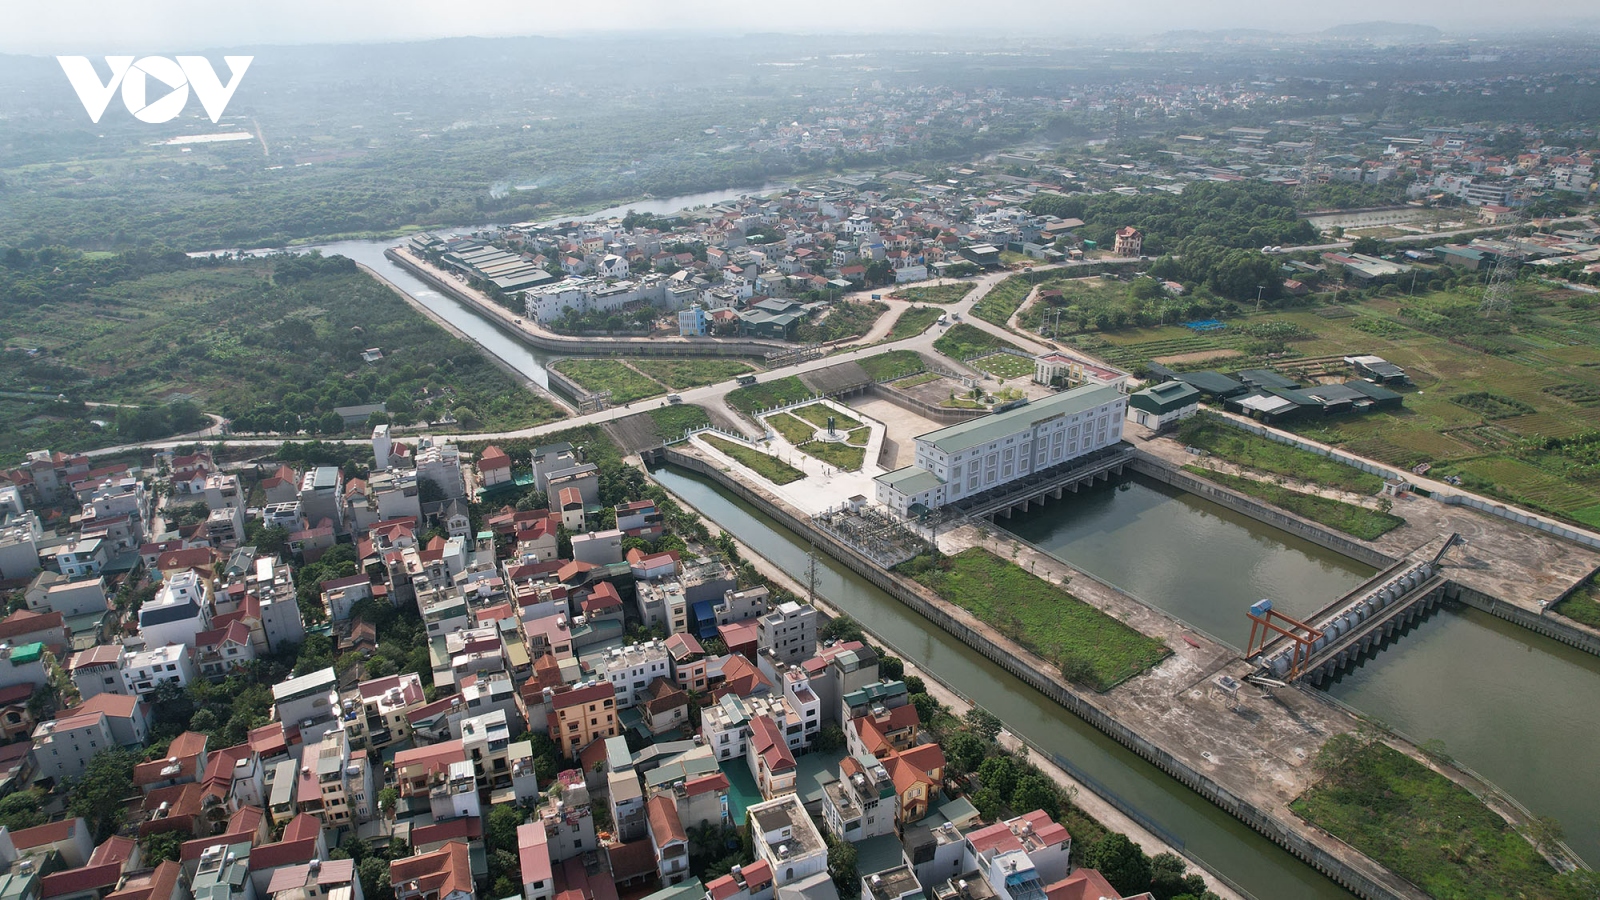 Dự án trạm bơm thoát nước phía Tây Hà Nội quá hạn 1 năm vẫn chưa hoàn thành